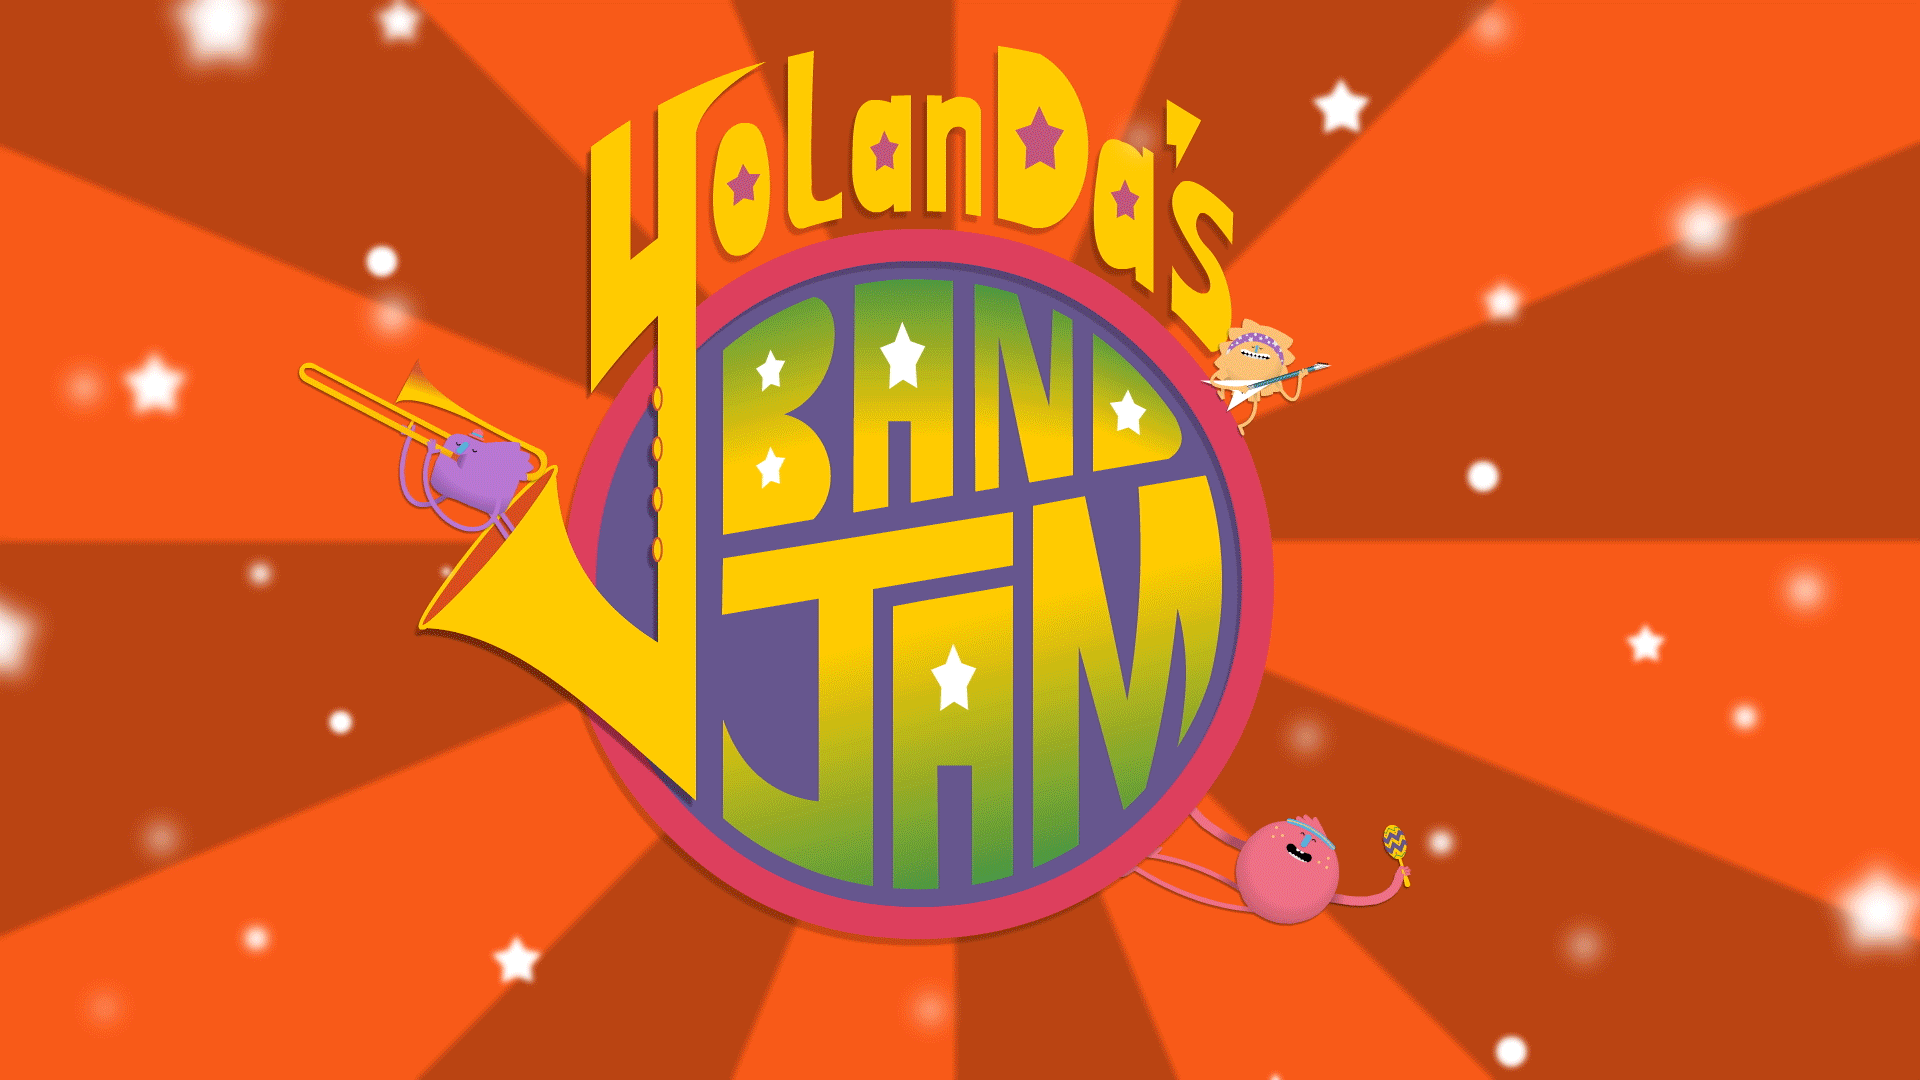 Yolanda's Band Jam